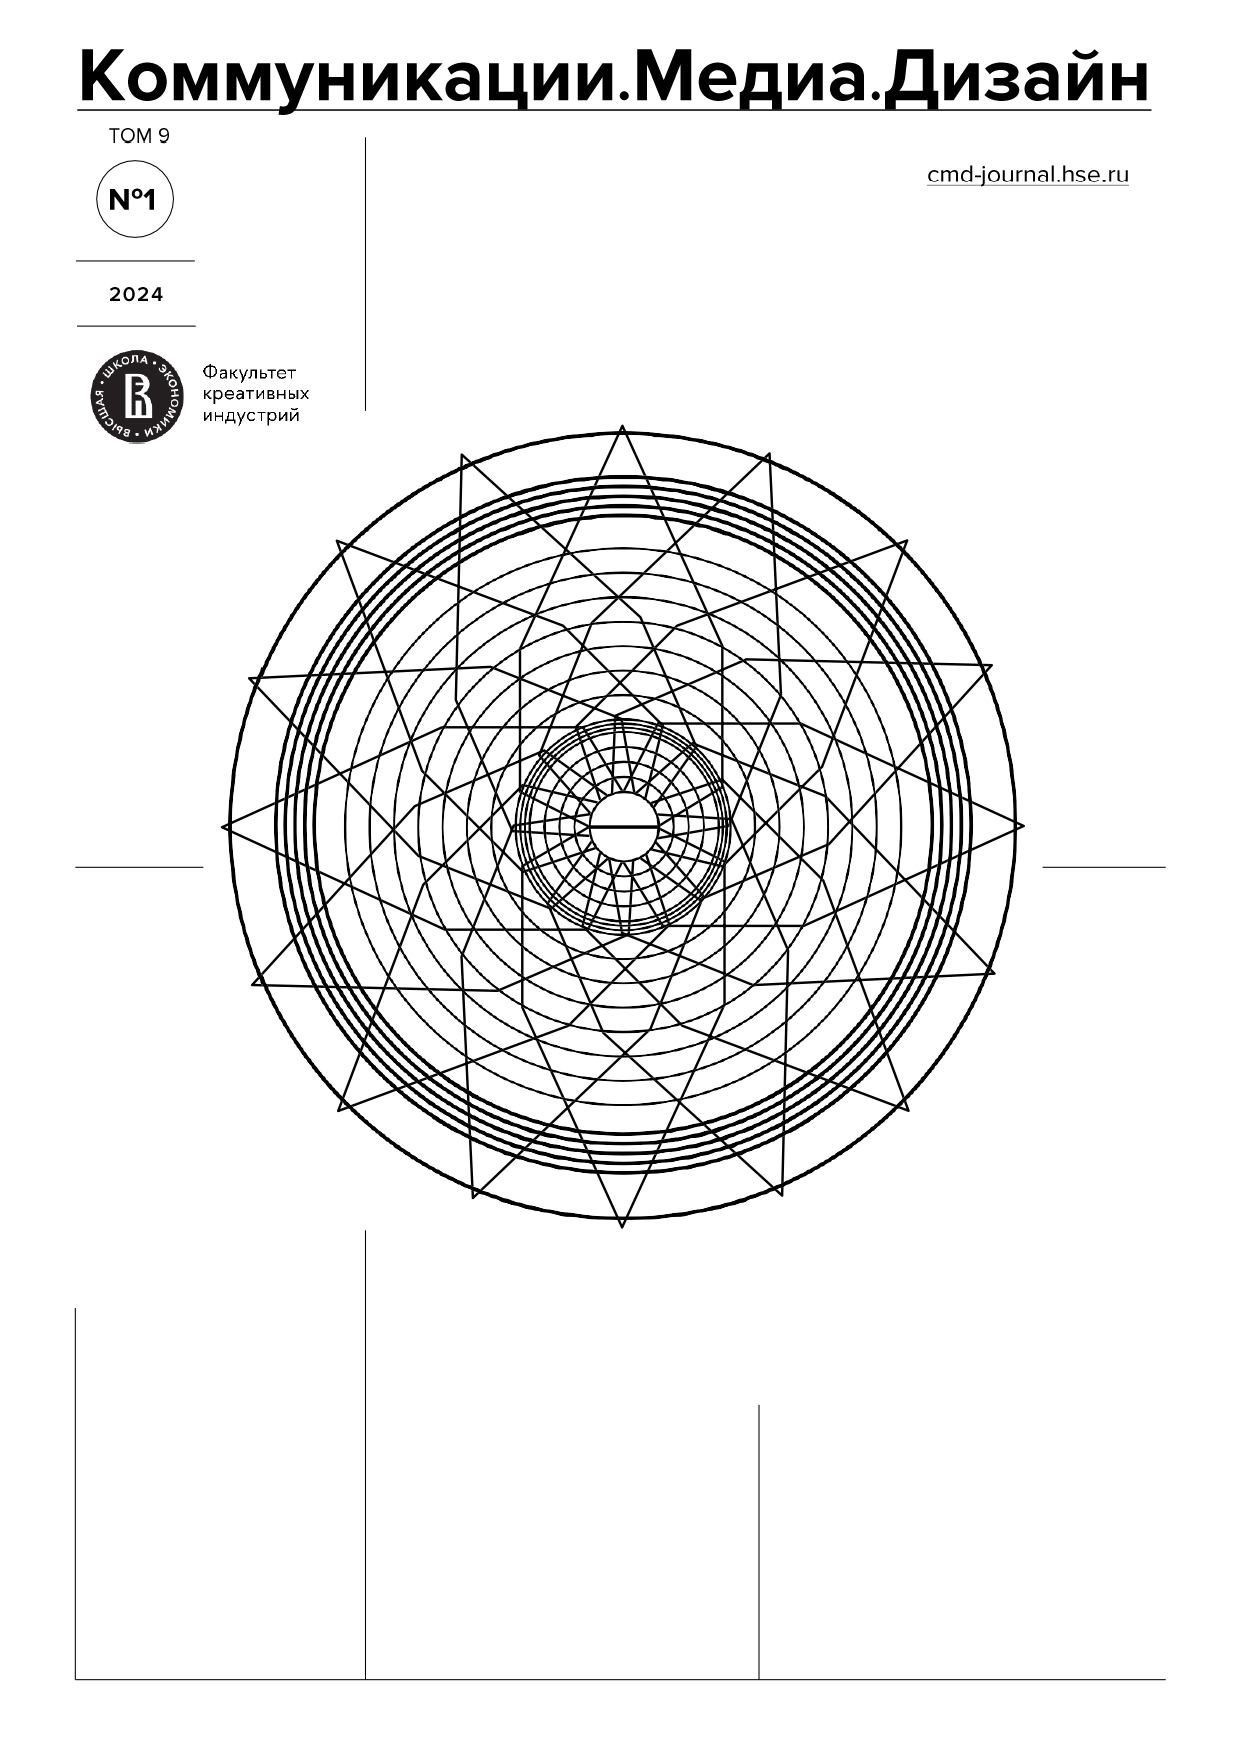 Название журнала "Коммуникации. Медиа. Дизайн", том 9, номер 1, 2024 год, адрес сайта журнала cmd-journal.hse.ru, эмблема факультета креативных индустрий, эмблема журнала.